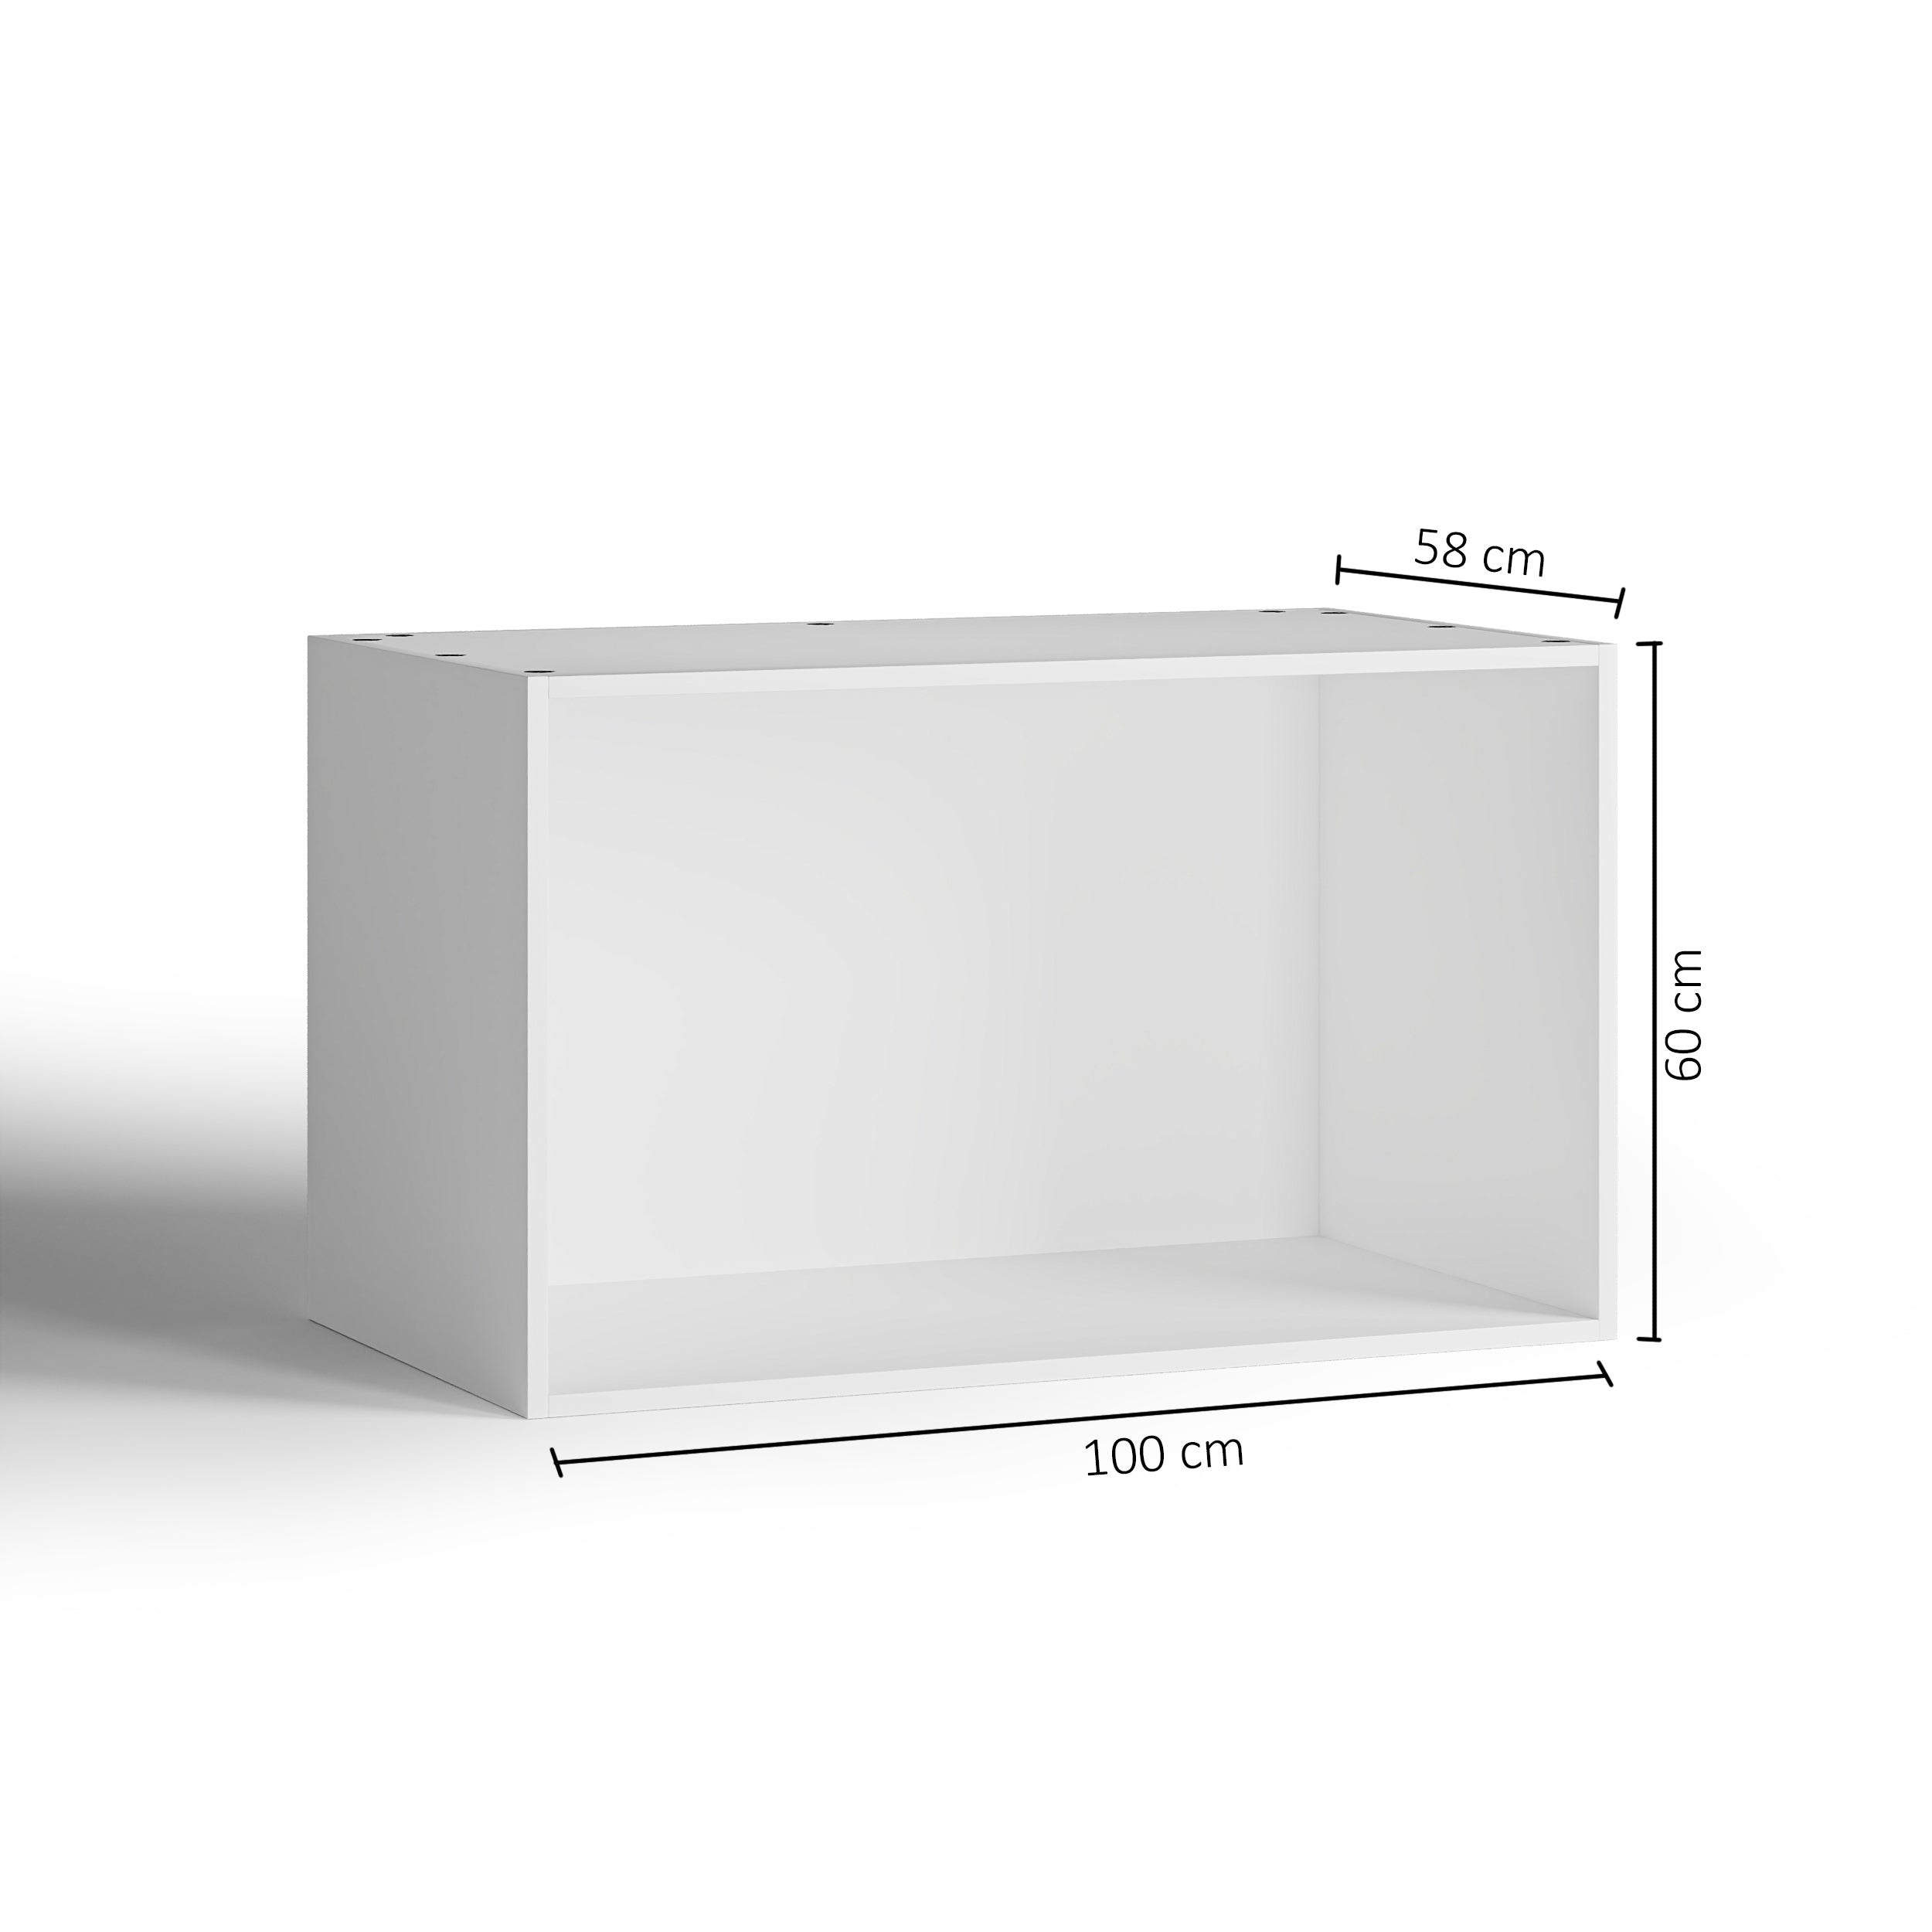 100x60 - Cabinet (58cm D) No Doors - PAX